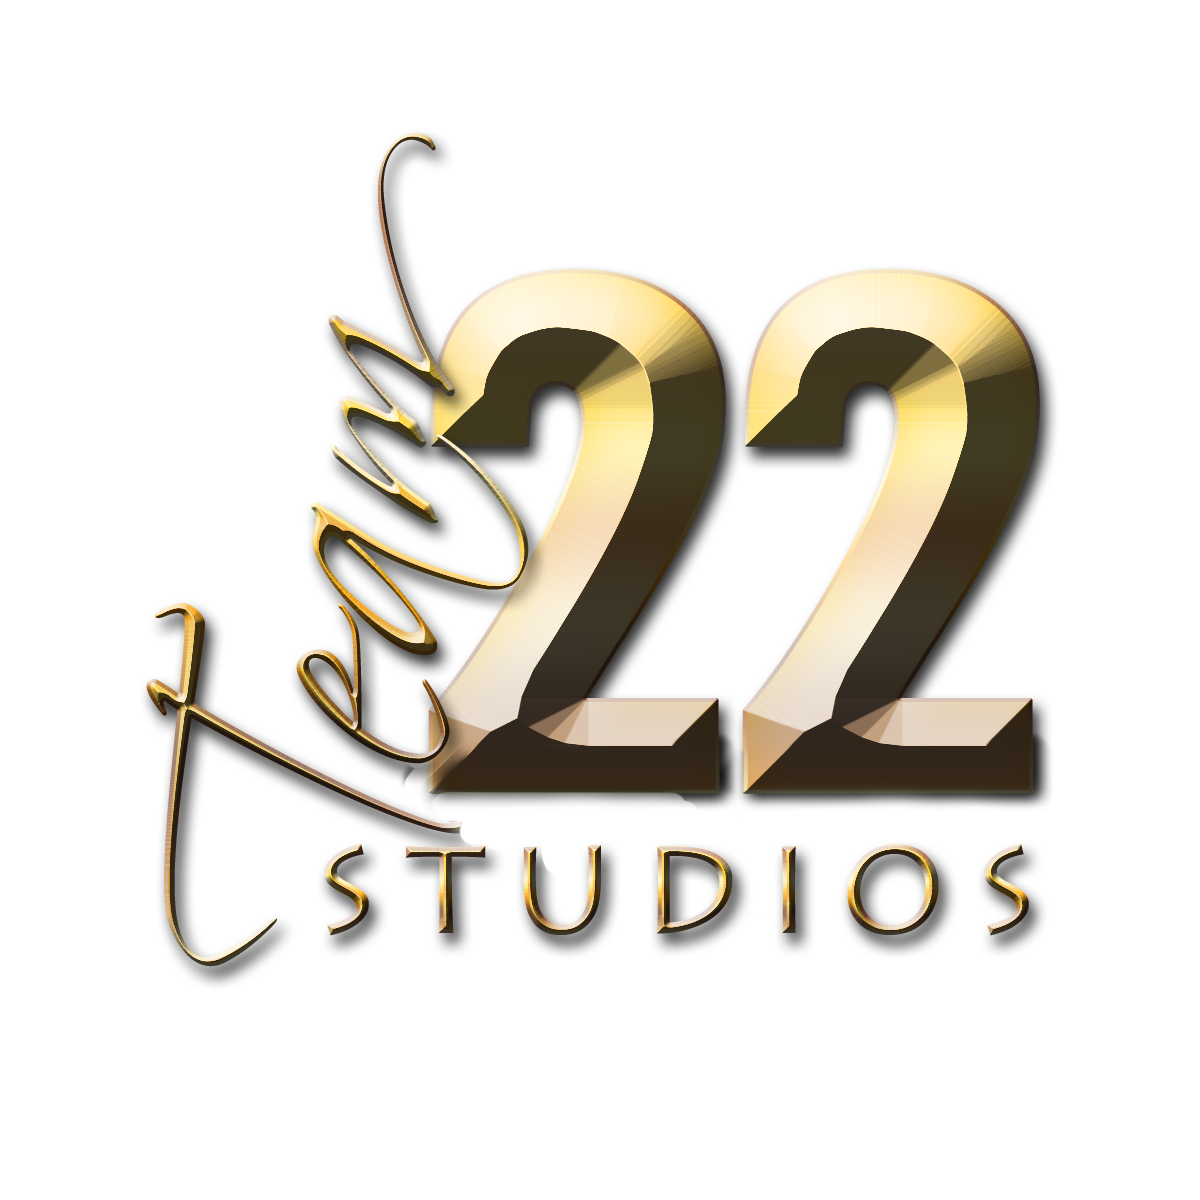 Team 22 Studios